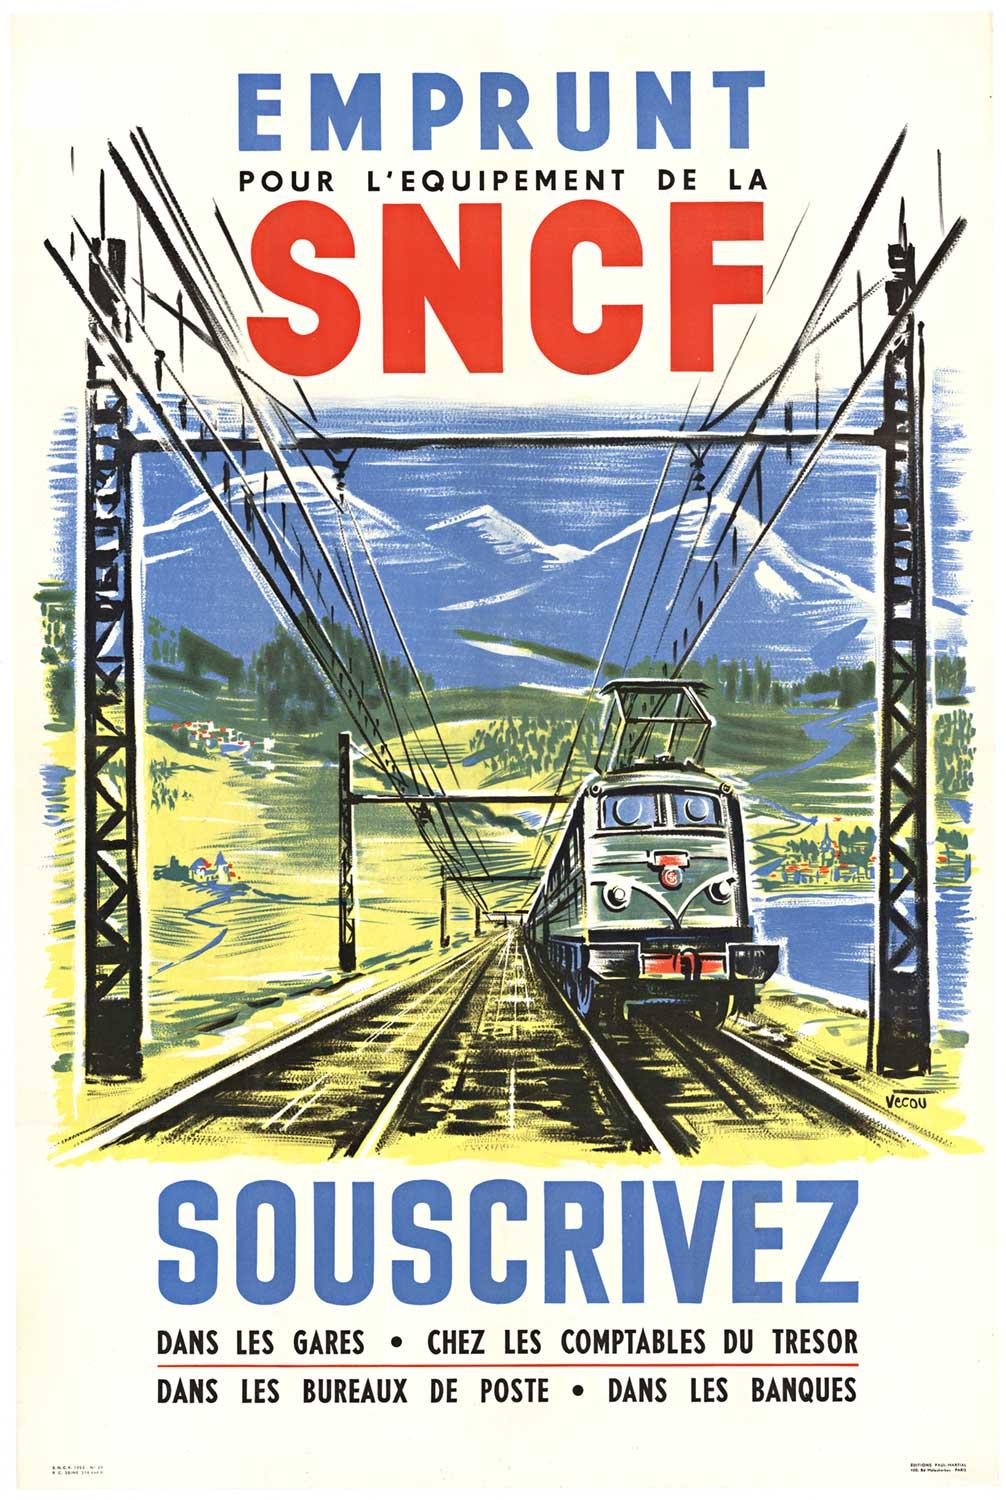 Original "Emprunt SNCF Souscrivez" 1953, vintage railroad poster